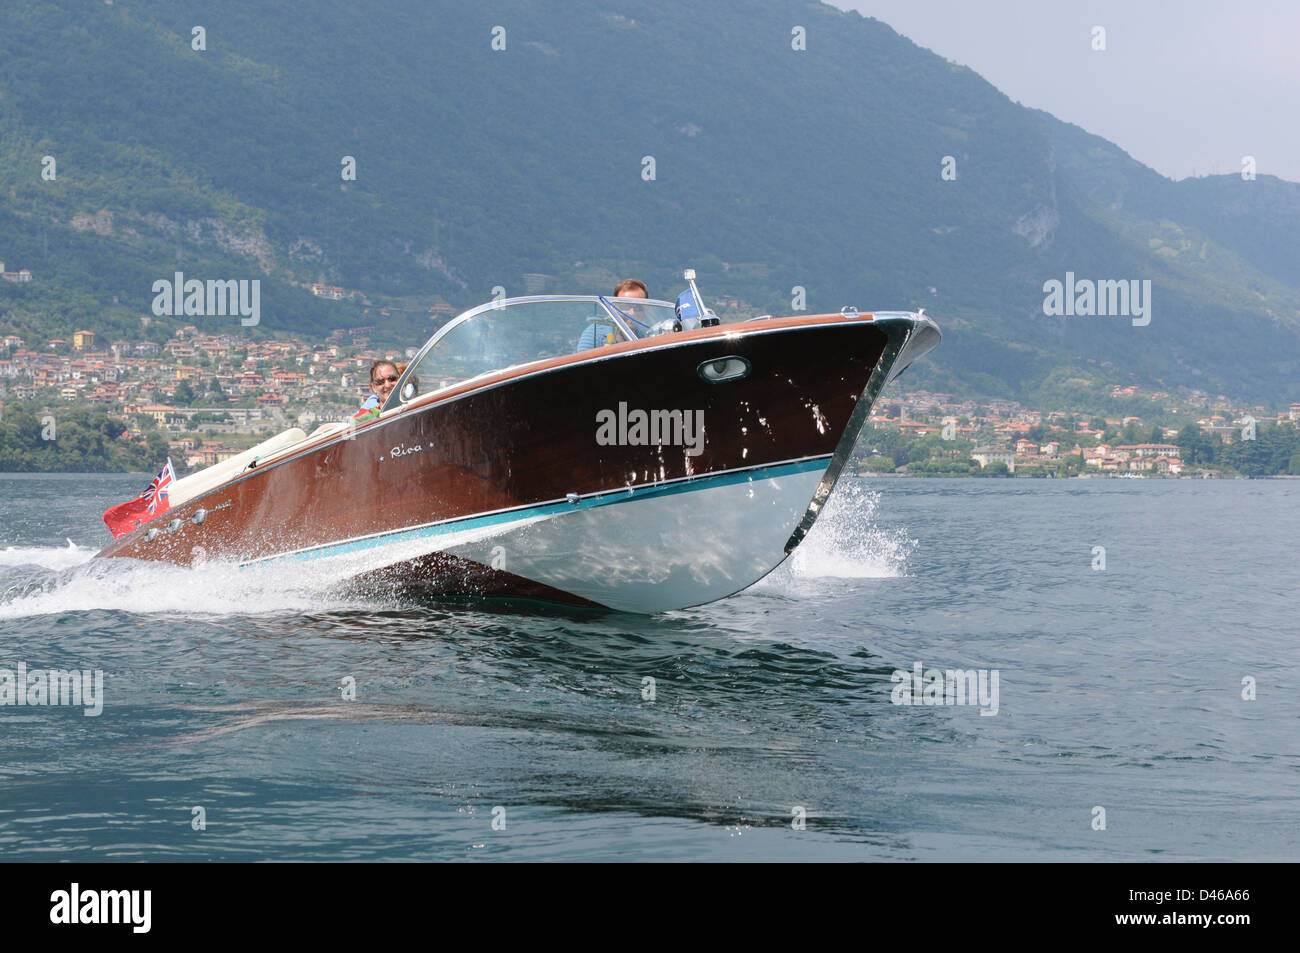 Riva bateau classique, le lac de Côme, Italie, juillet 2009. Riva Ariston classique Traversée bateau Lac de Côme, dans les lacs italiens. Banque D'Images